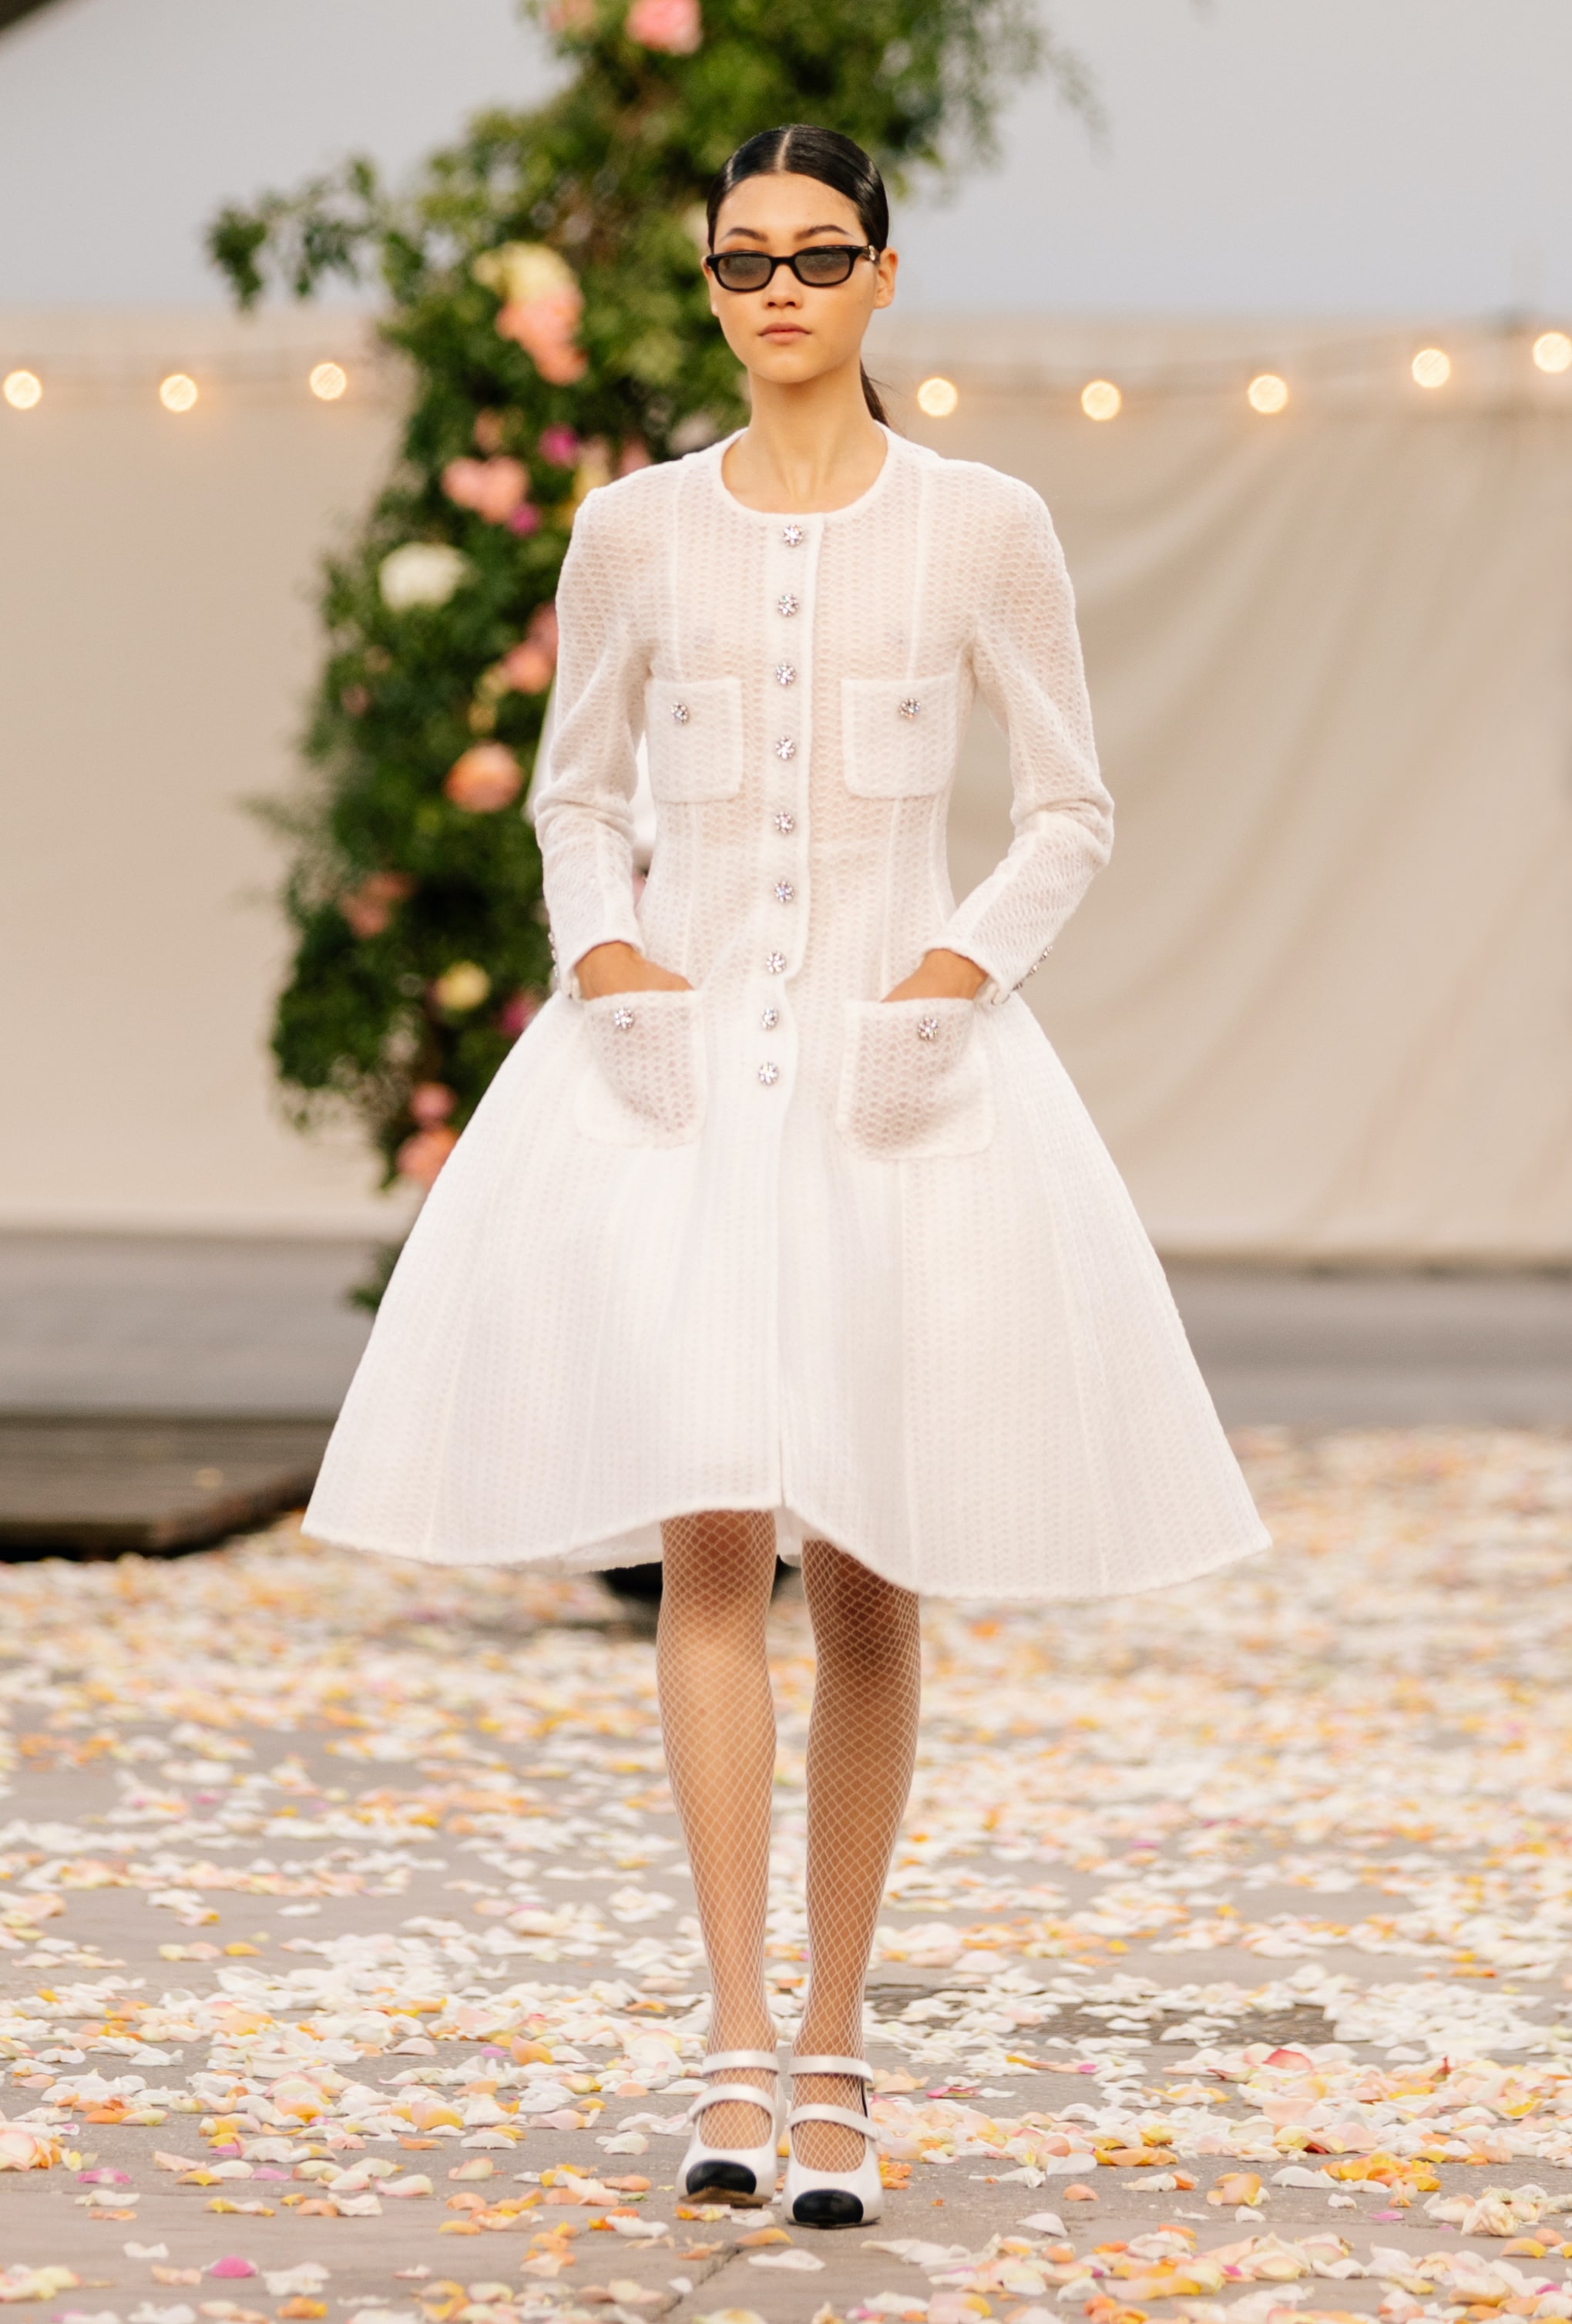 Chanel viste la Alta Costura de fiesta con su colección primavera-verano 2021